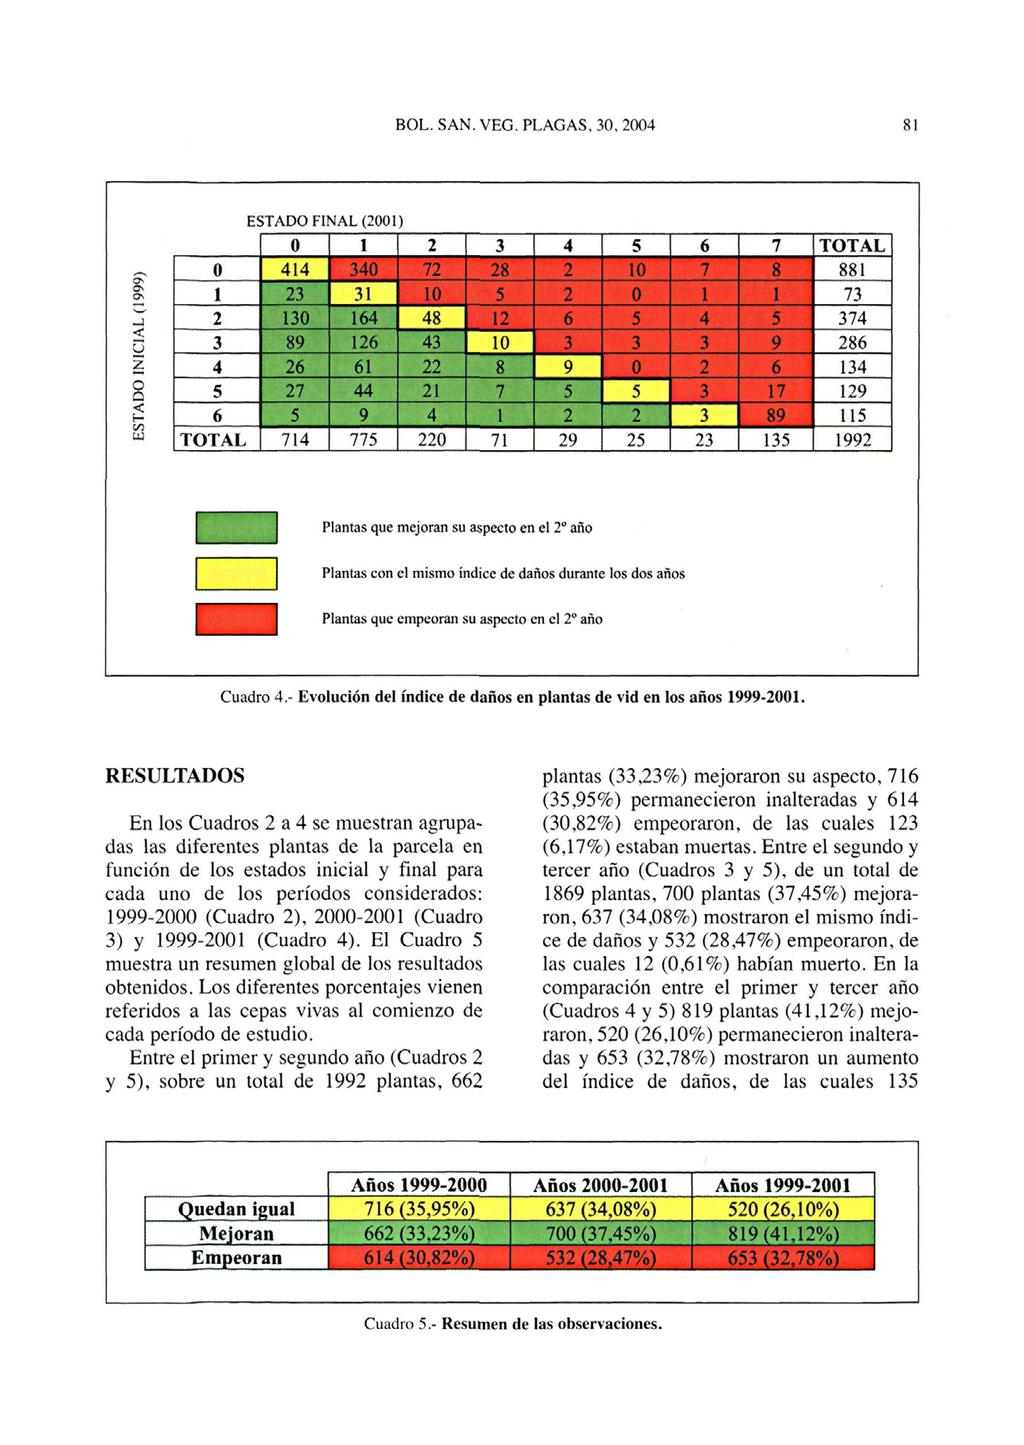 Cuadro 4- Evolución del índice de daños en plantas de vid en los años 1999-2001.